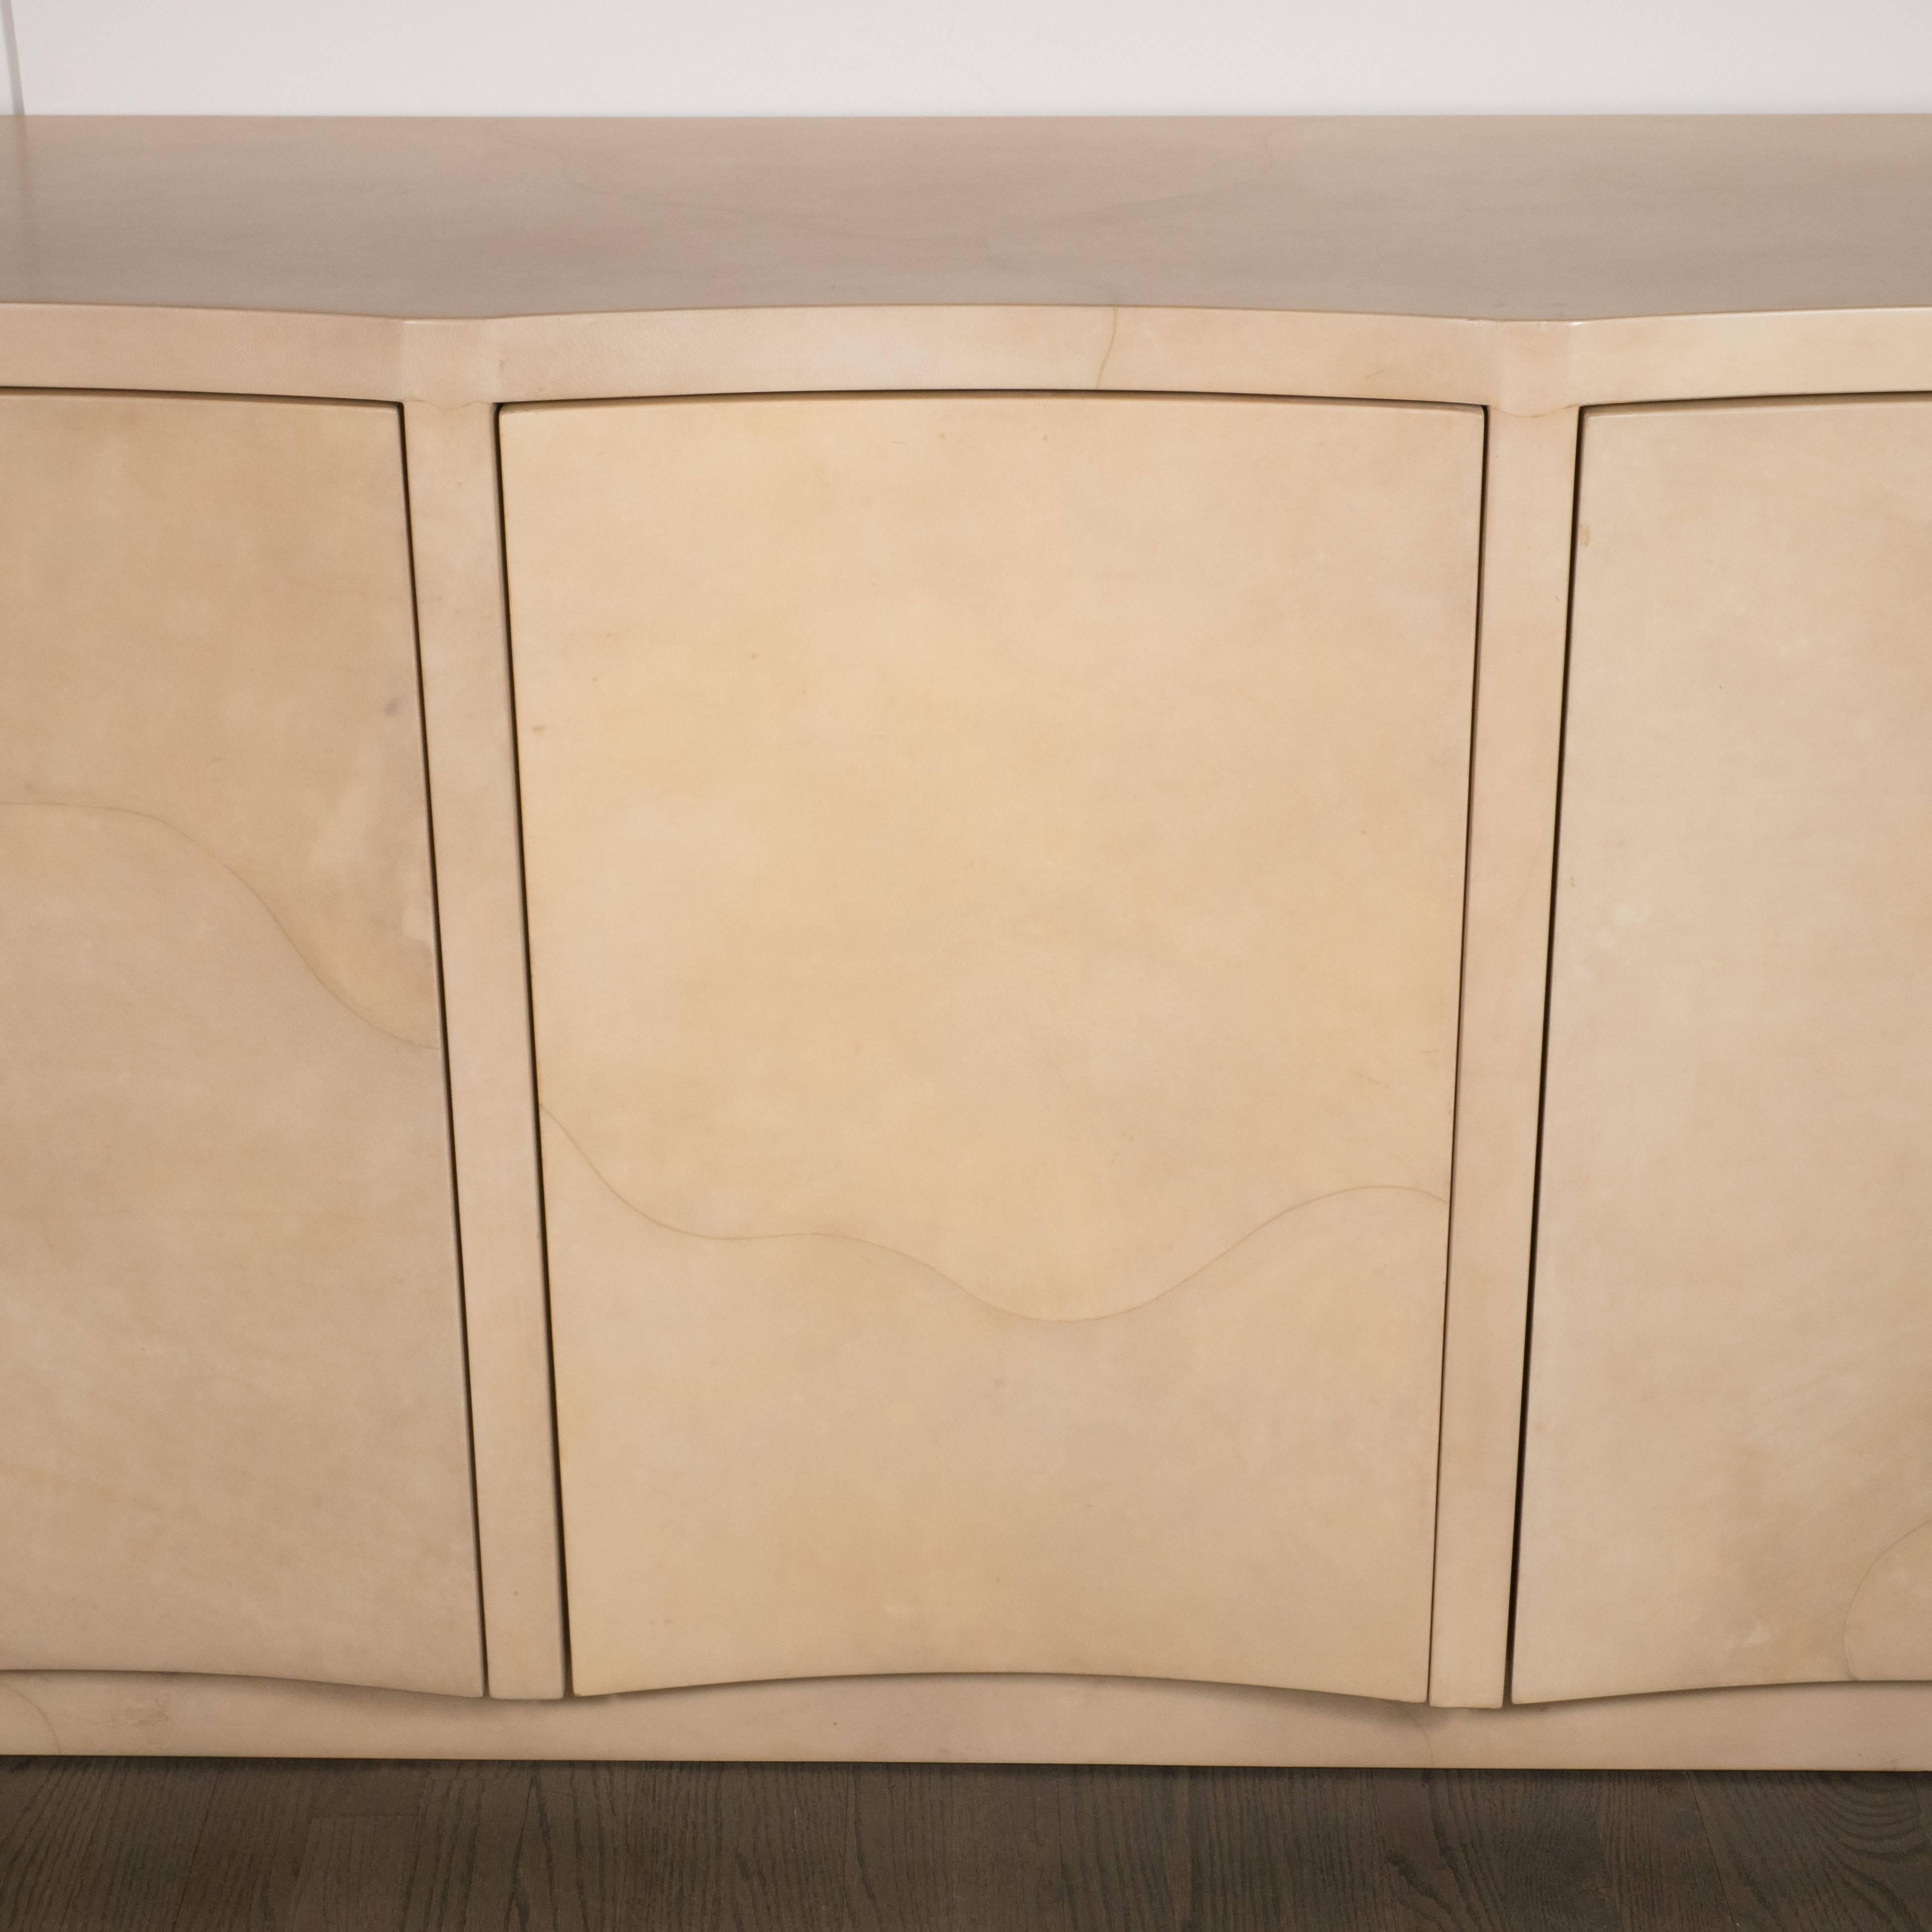 American Modernist Lacquered Goat Skin Cabinet or Sideboard, Manner of Karl Springer